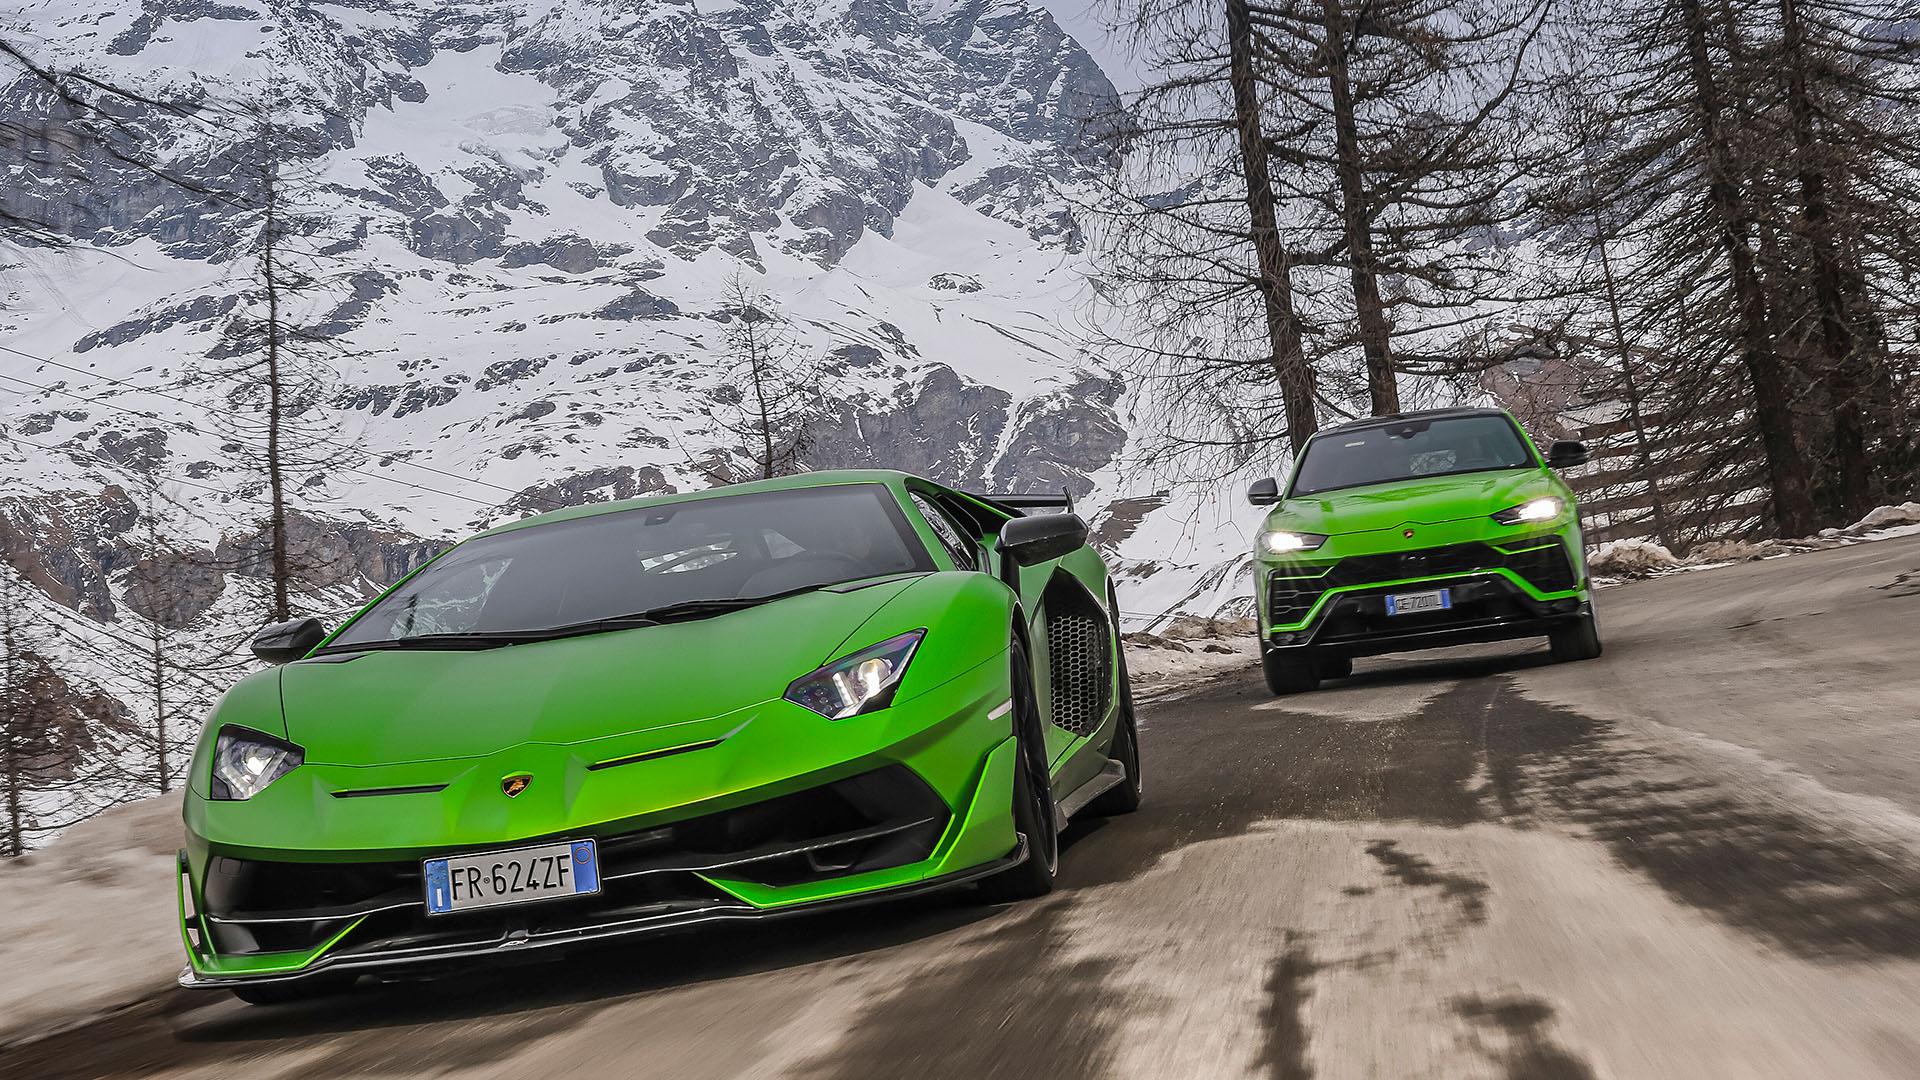 2022 Lamborghini in winter drive 36